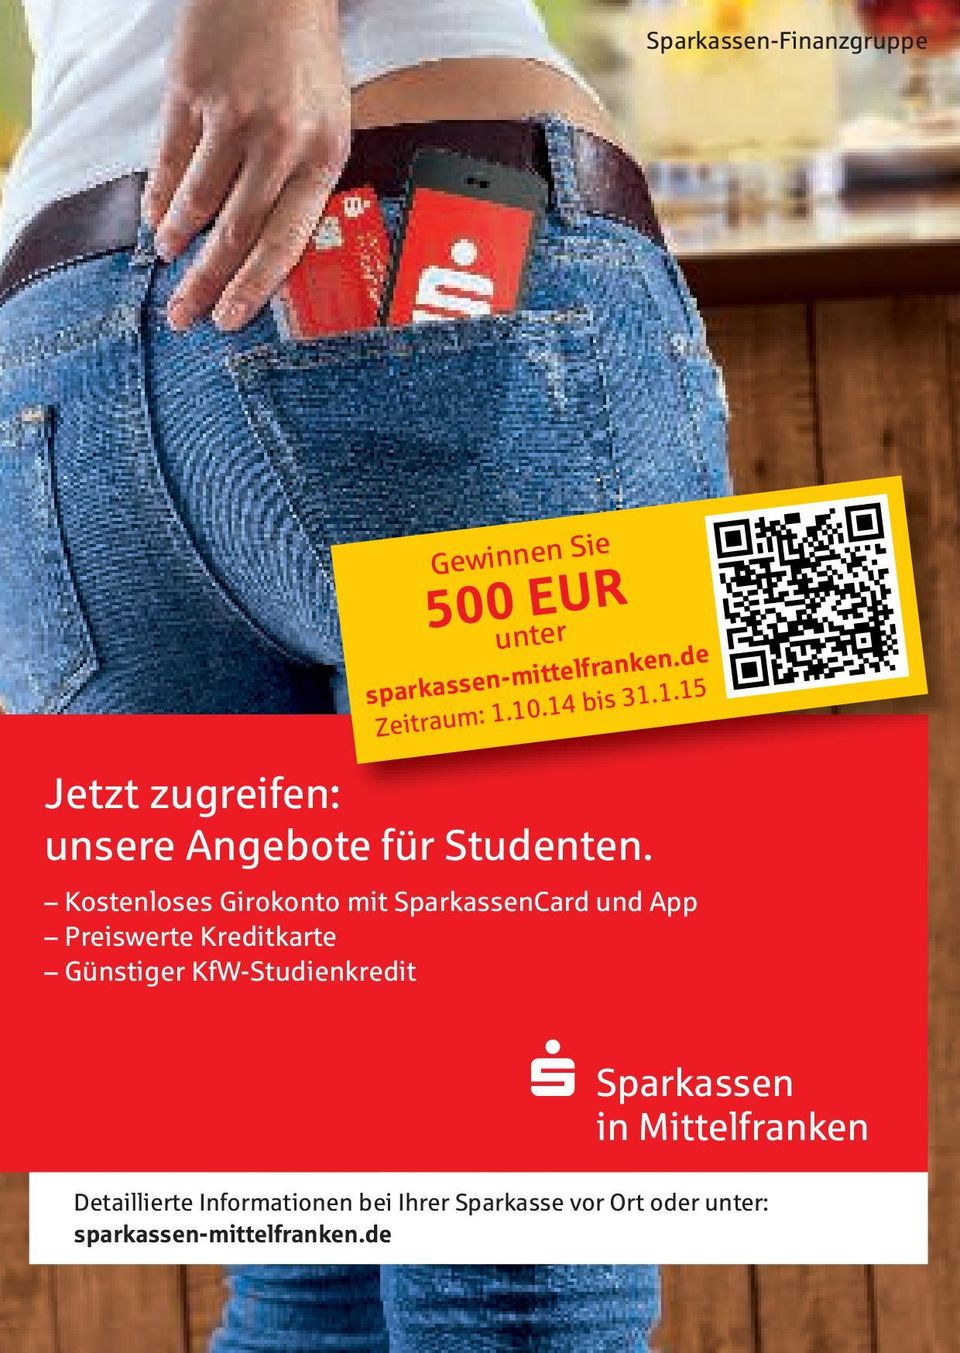 Kostenloses Girokonto mit SparkassenCard und App Preiswerte Kreditkarte Günstiger